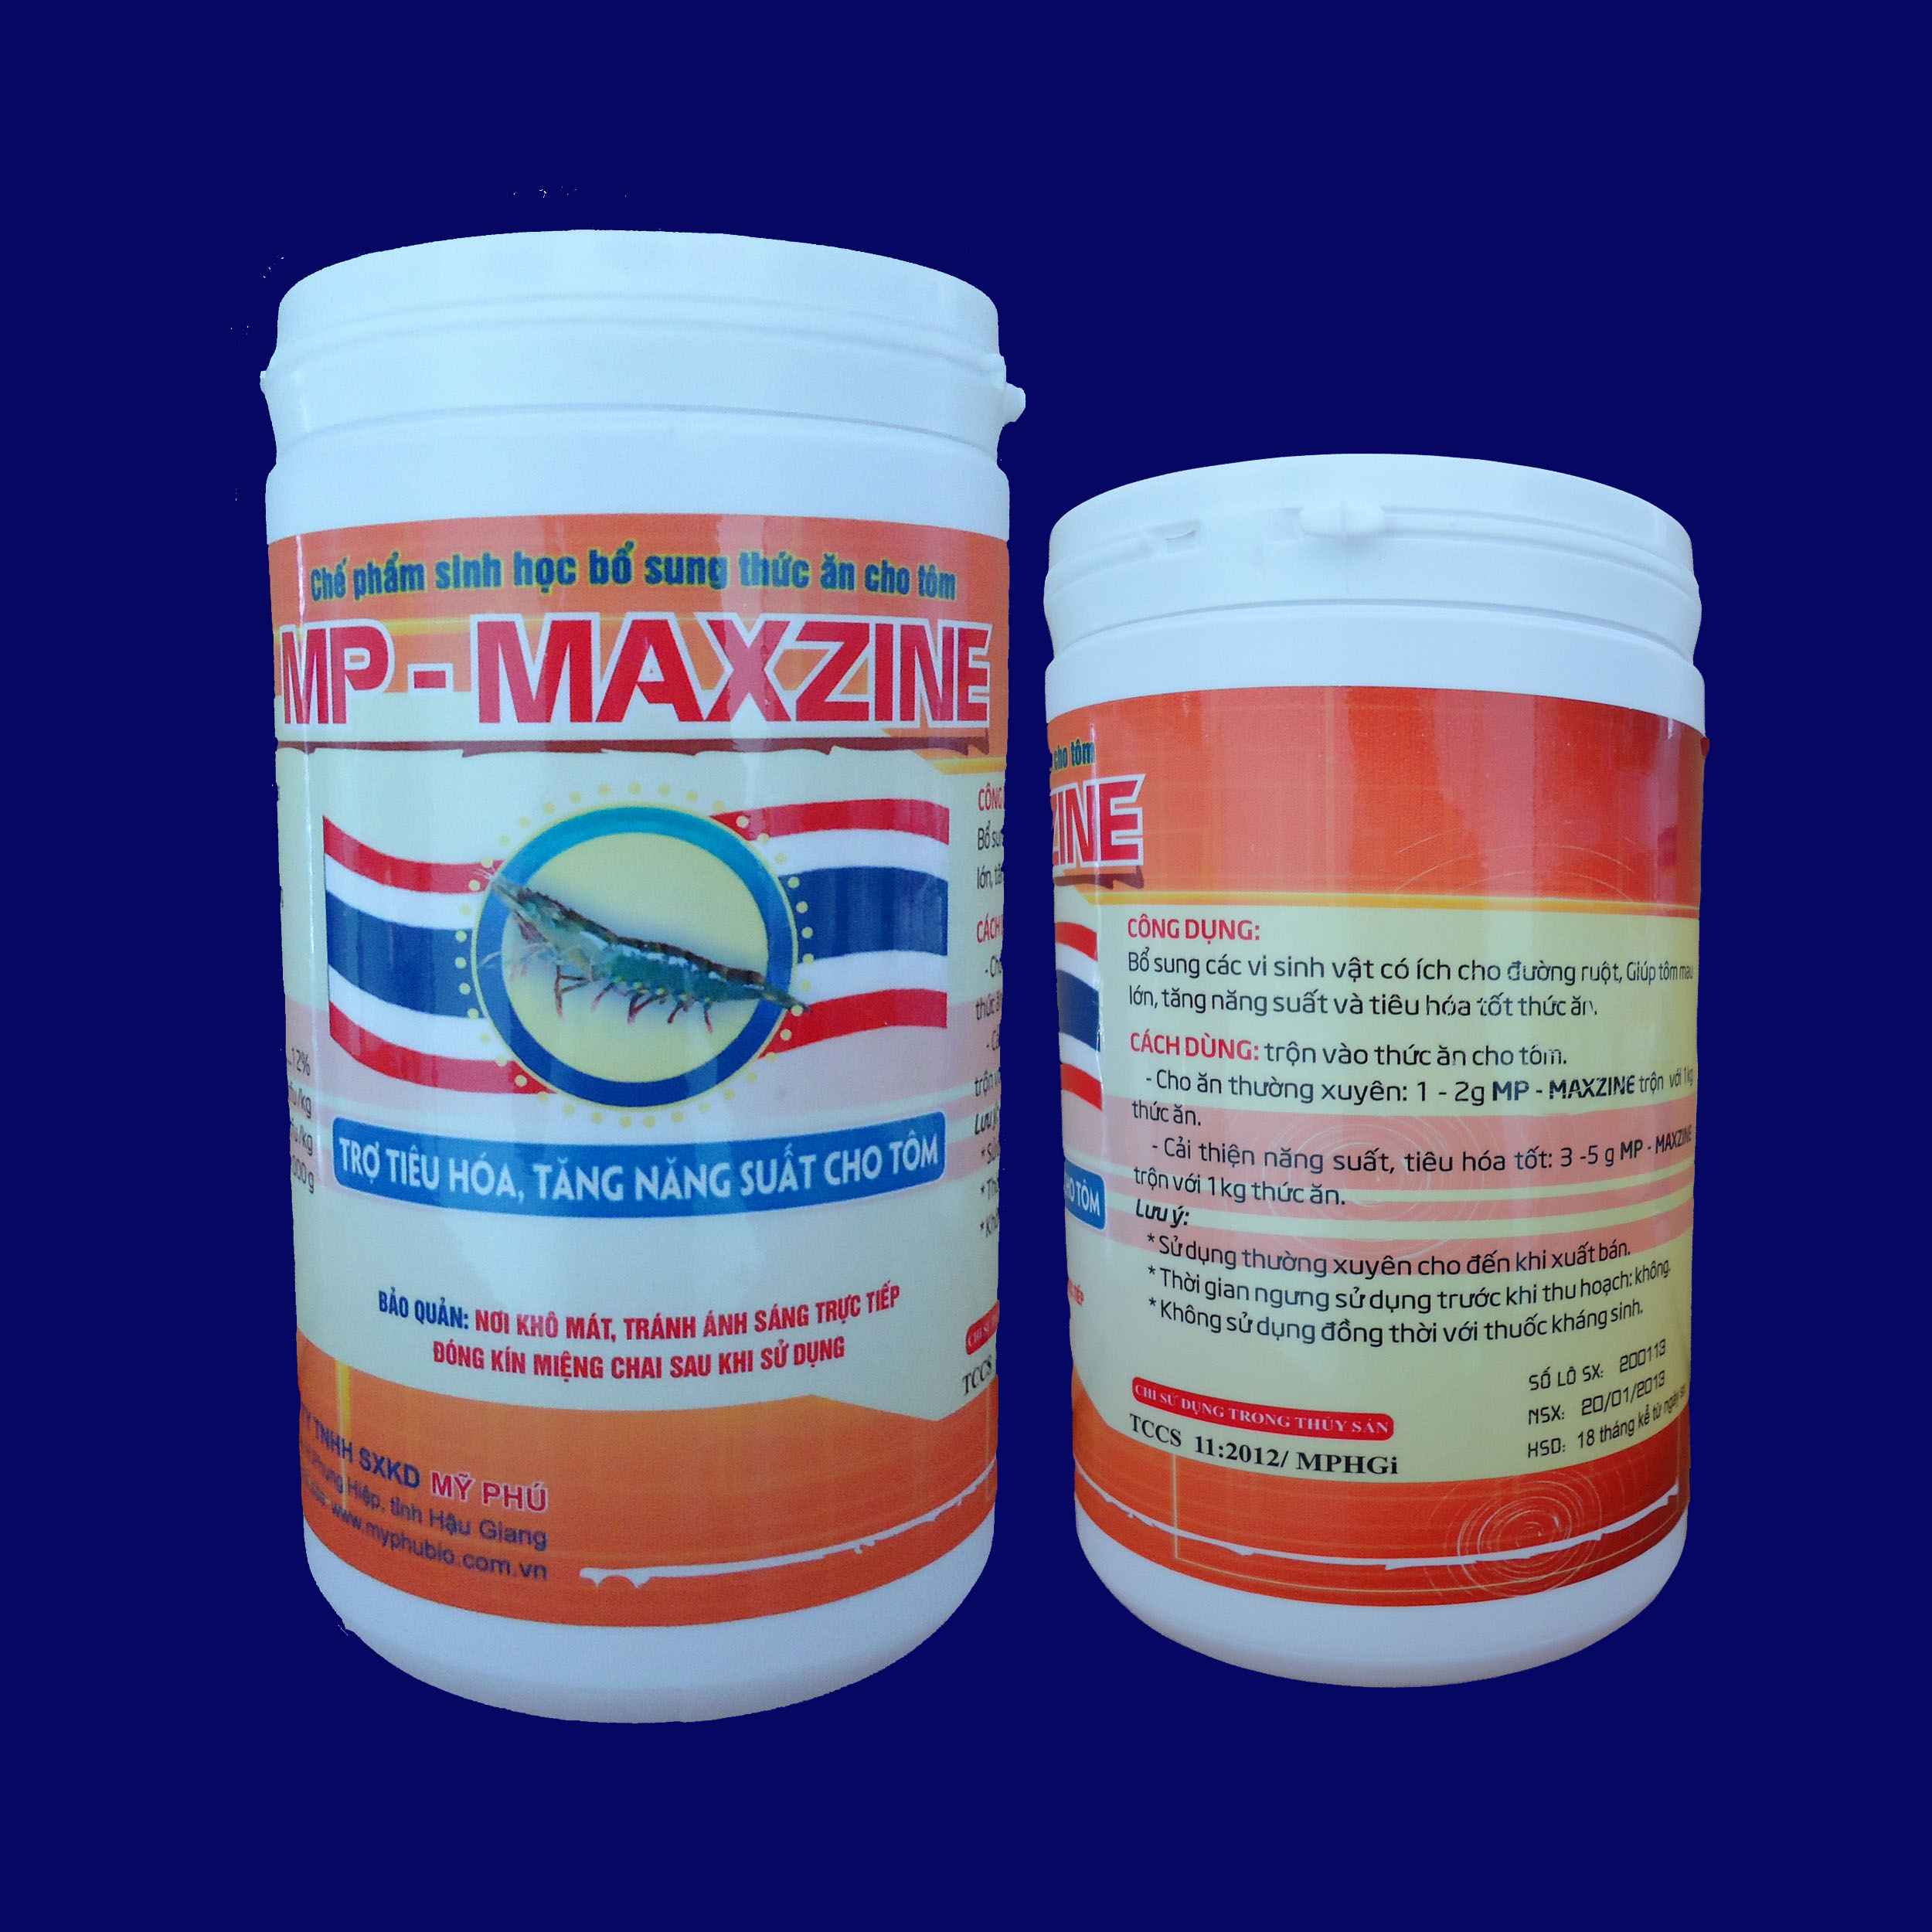 MP - MAXZINE - Thuốc Thú Y Thủy Sản Mỹ Phú - Công Ty TNHH Sản Xuất Kinh Doanh Mỹ Phú